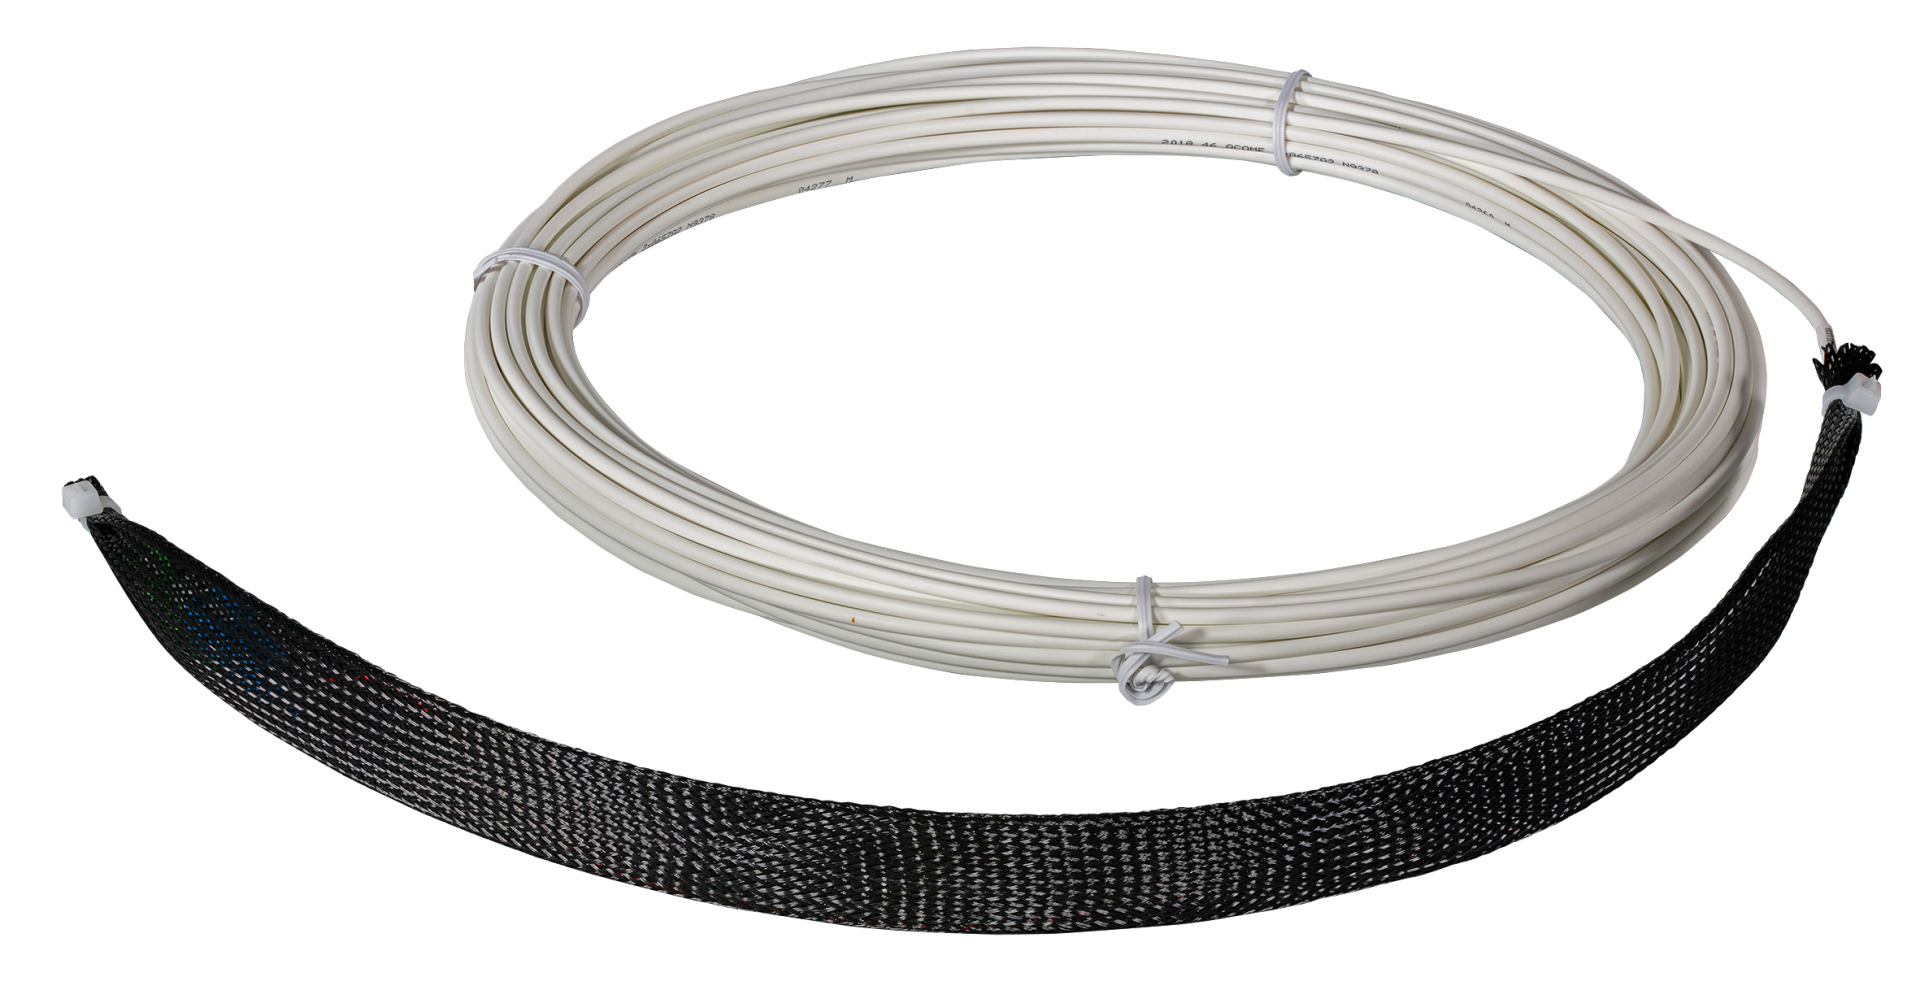 Drop cable SC-SC/APC 1 side assembled, SM G657A2, 2 fiber, white, Dca, 30m